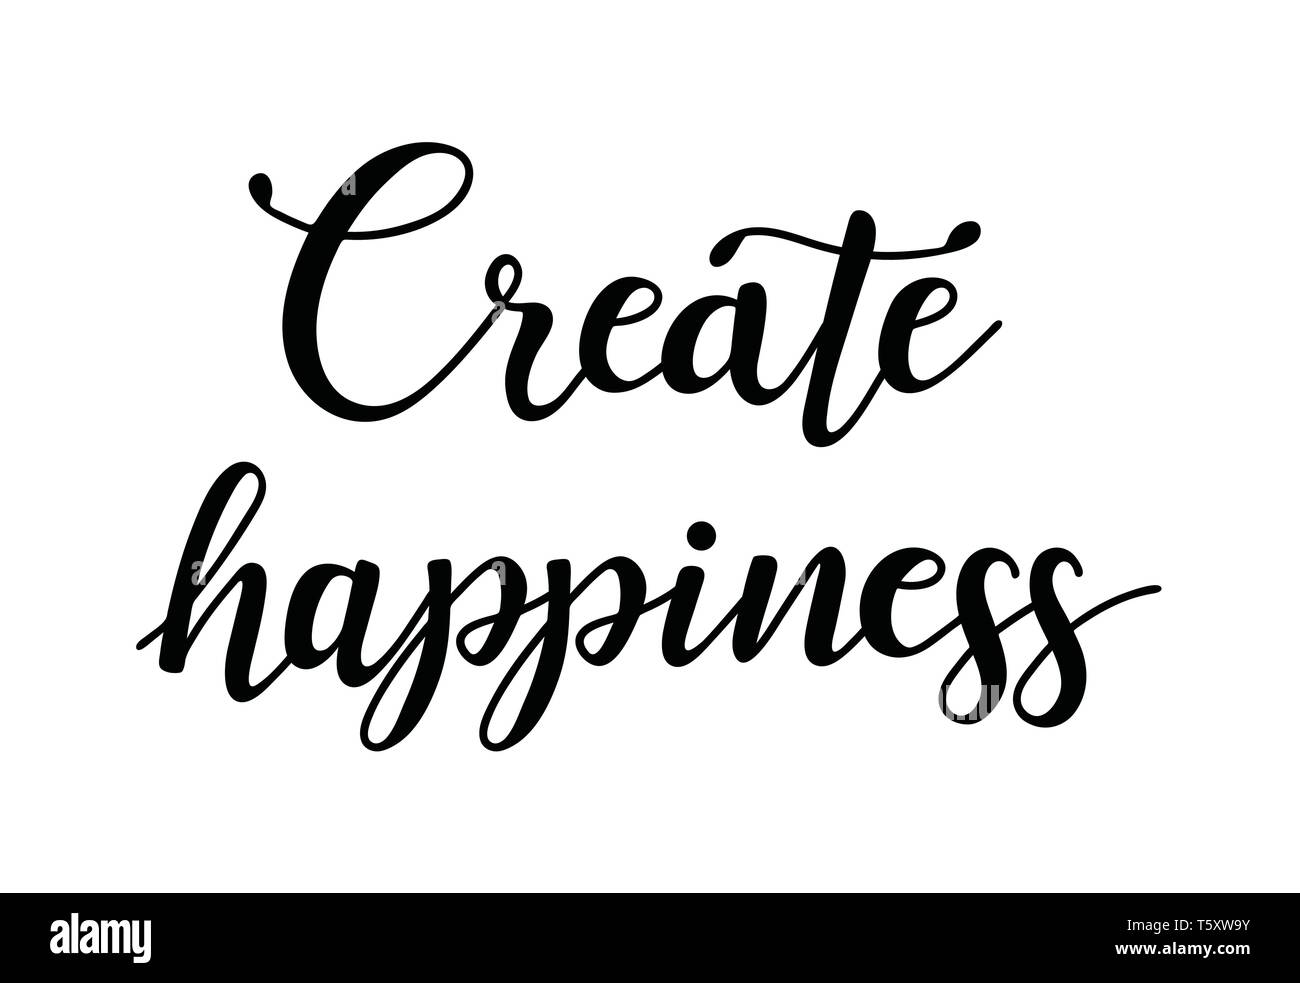 Creare la felicità. Preventivo di ispirazione circa felice. La calligrafia moderna frase. Illustrazione Vettoriale